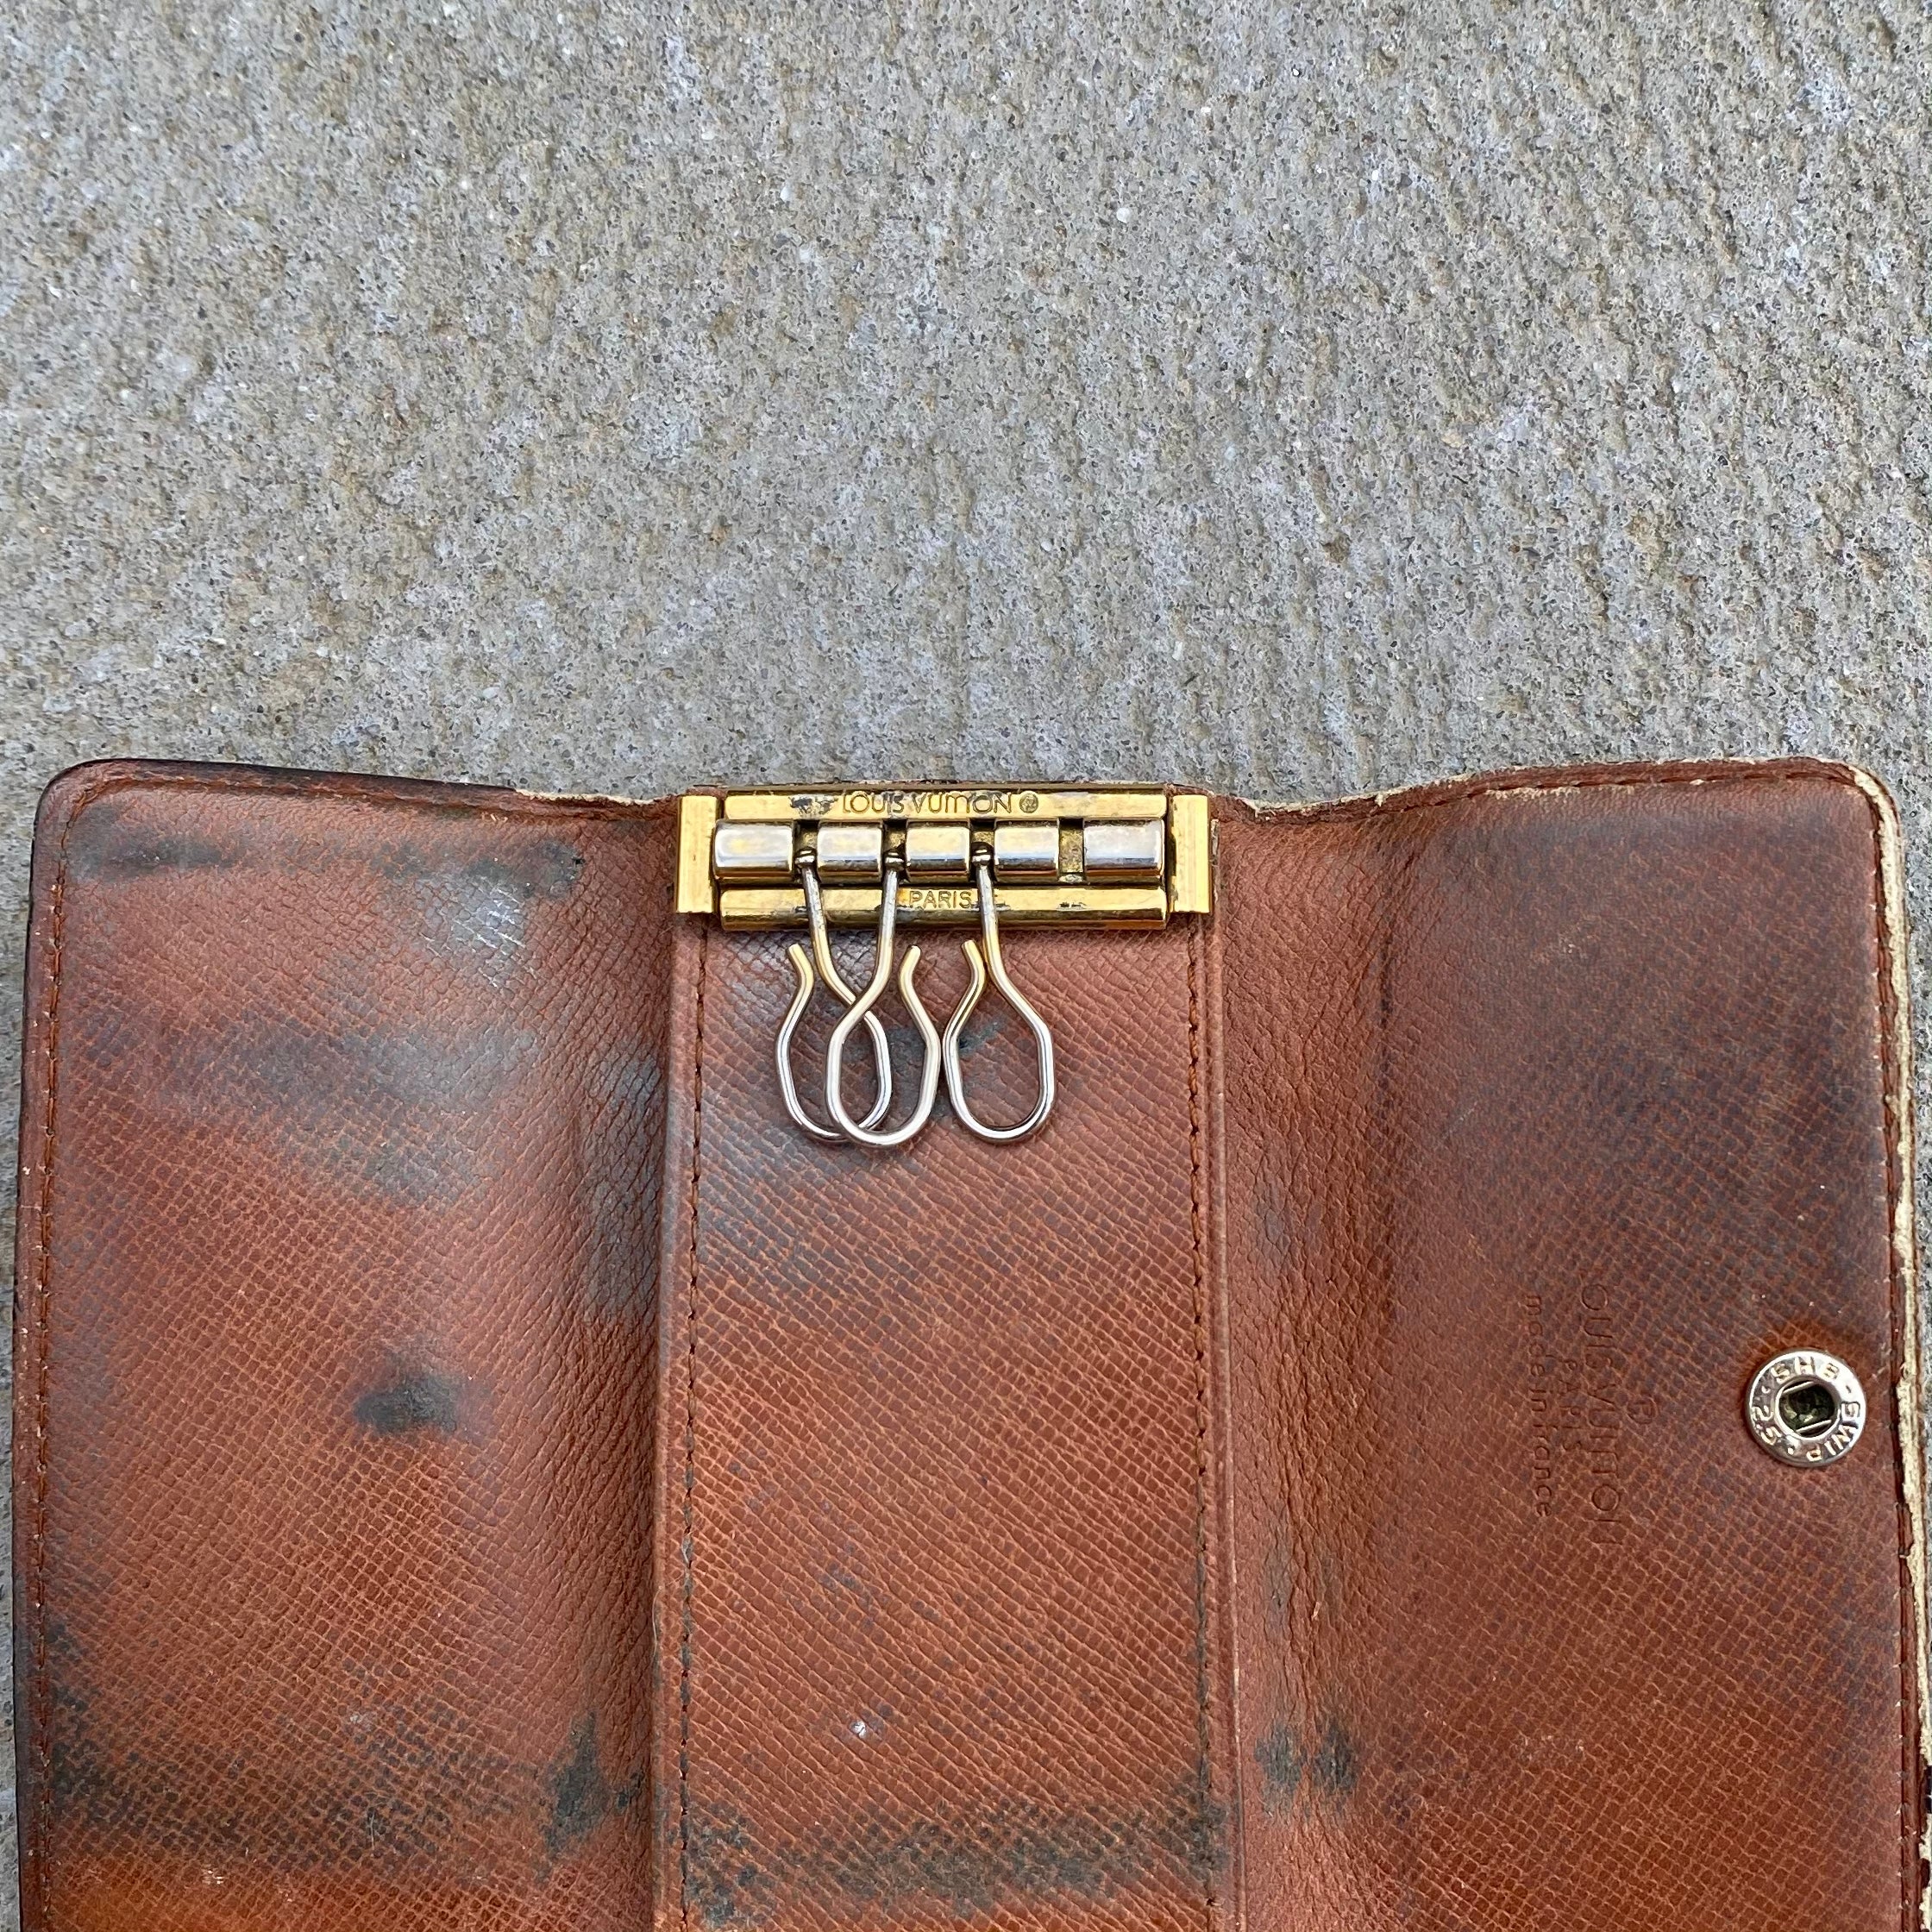 lv key holder wallet